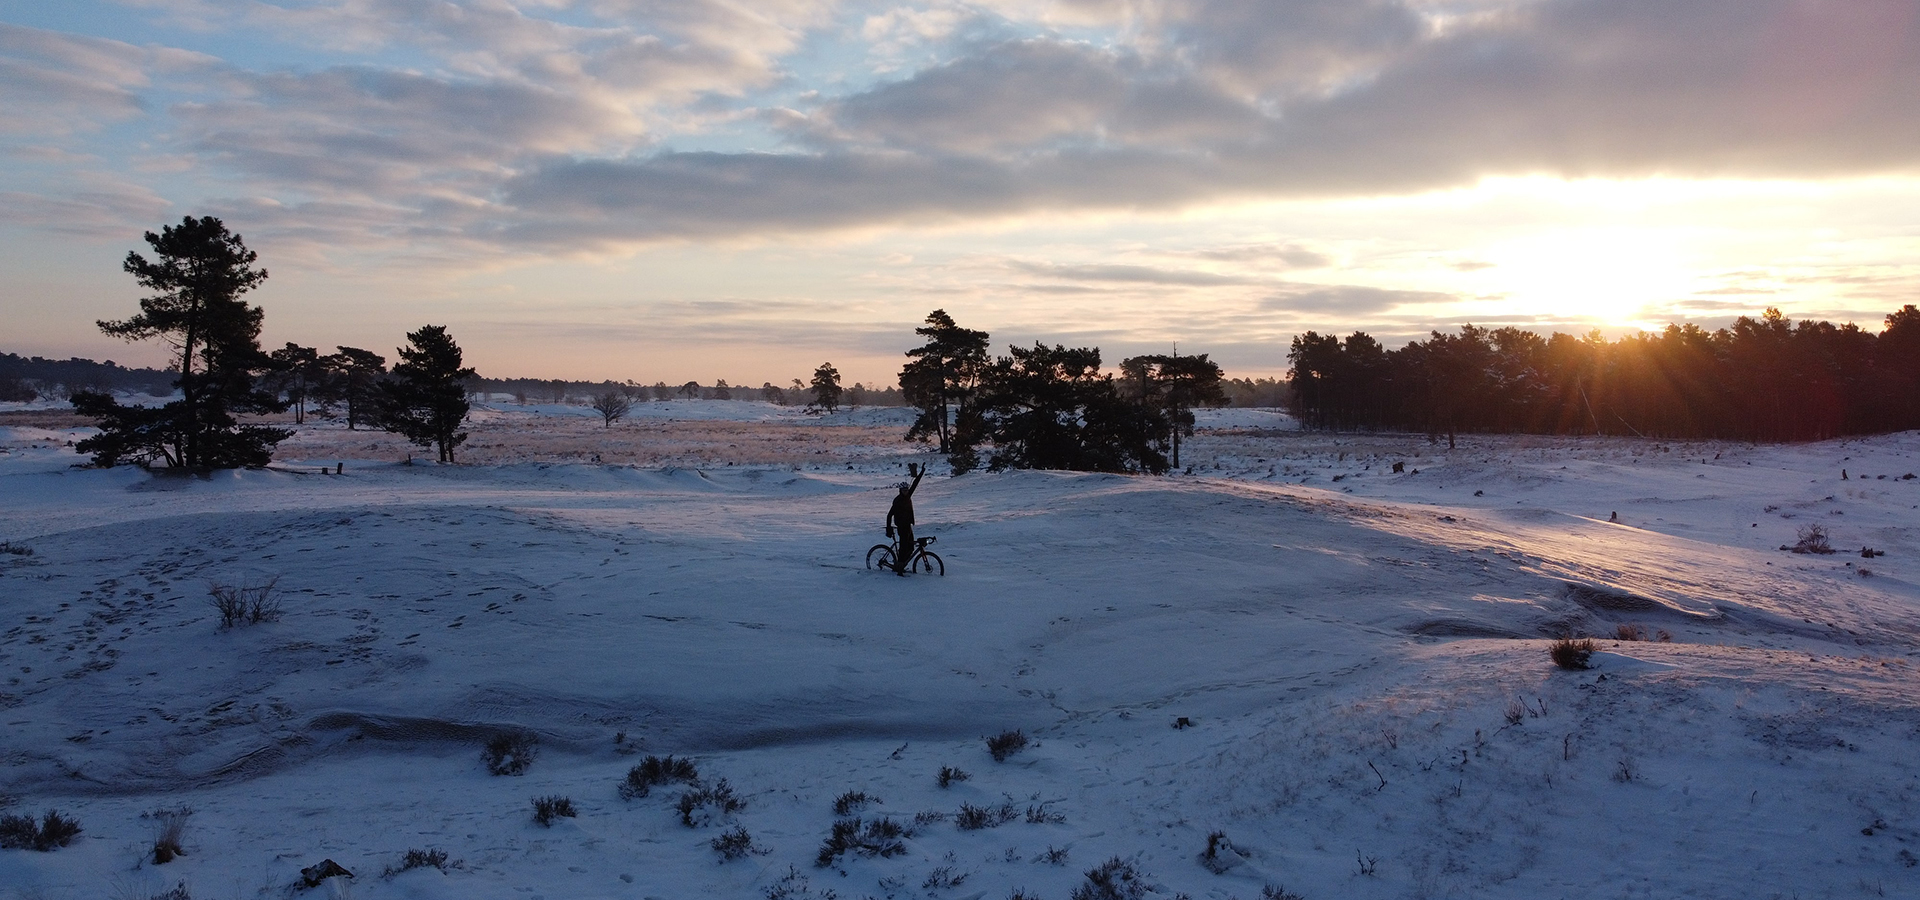 Verken de winterse pracht met Rogelli fietskleding, terwijl een fietser vol trots zijn fiets in de sneeuw presenteert. Voel de warmte en bescherming, zelfs in koude omstandigheden!